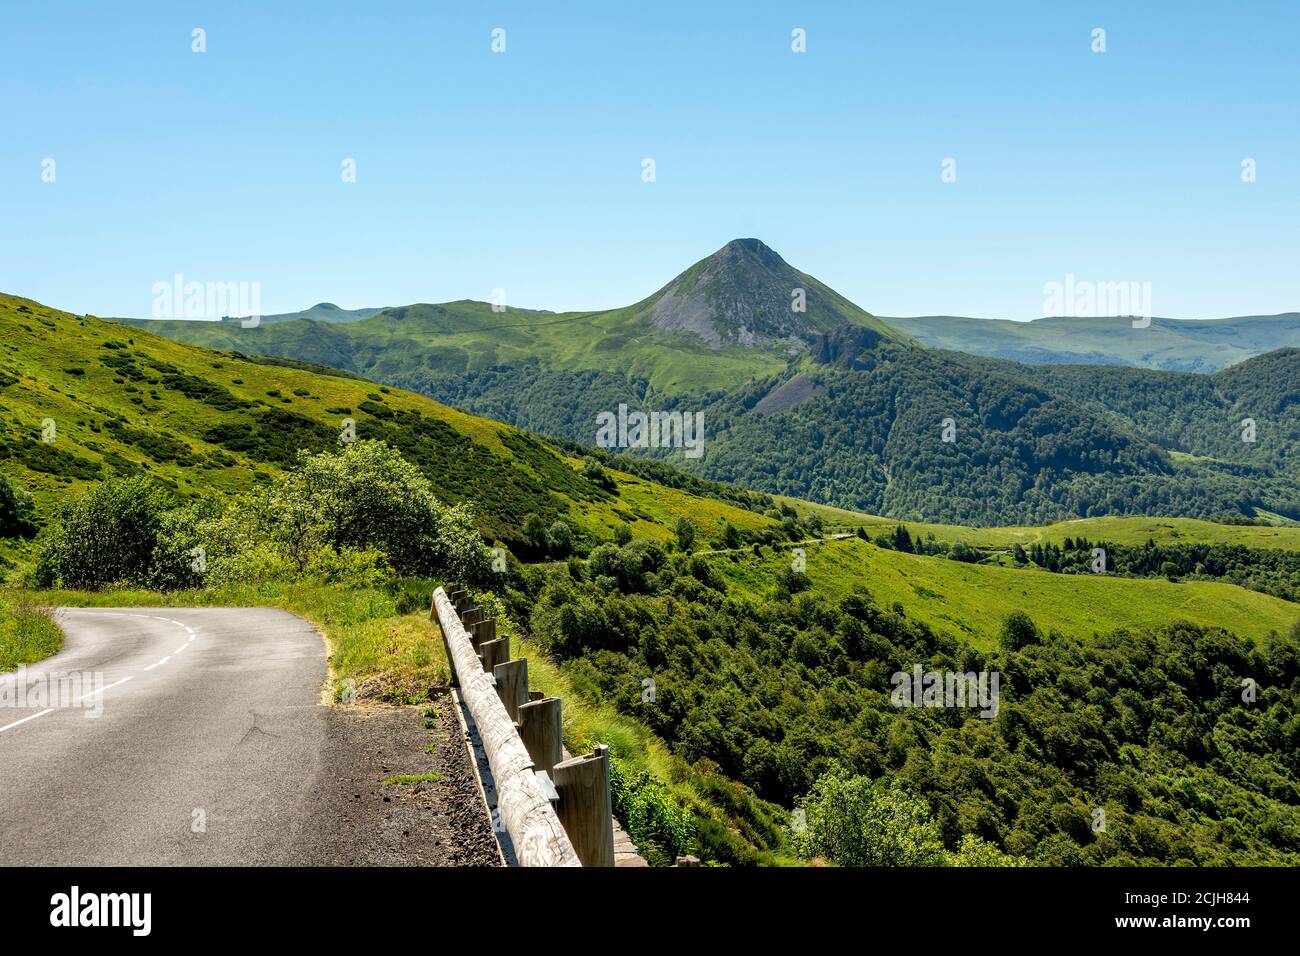 Le Puy Griou dans le Parc naturel régional des volcans d'Auvergne, Cantal, Auvergne Rhône Alpes, France Banque D'Images